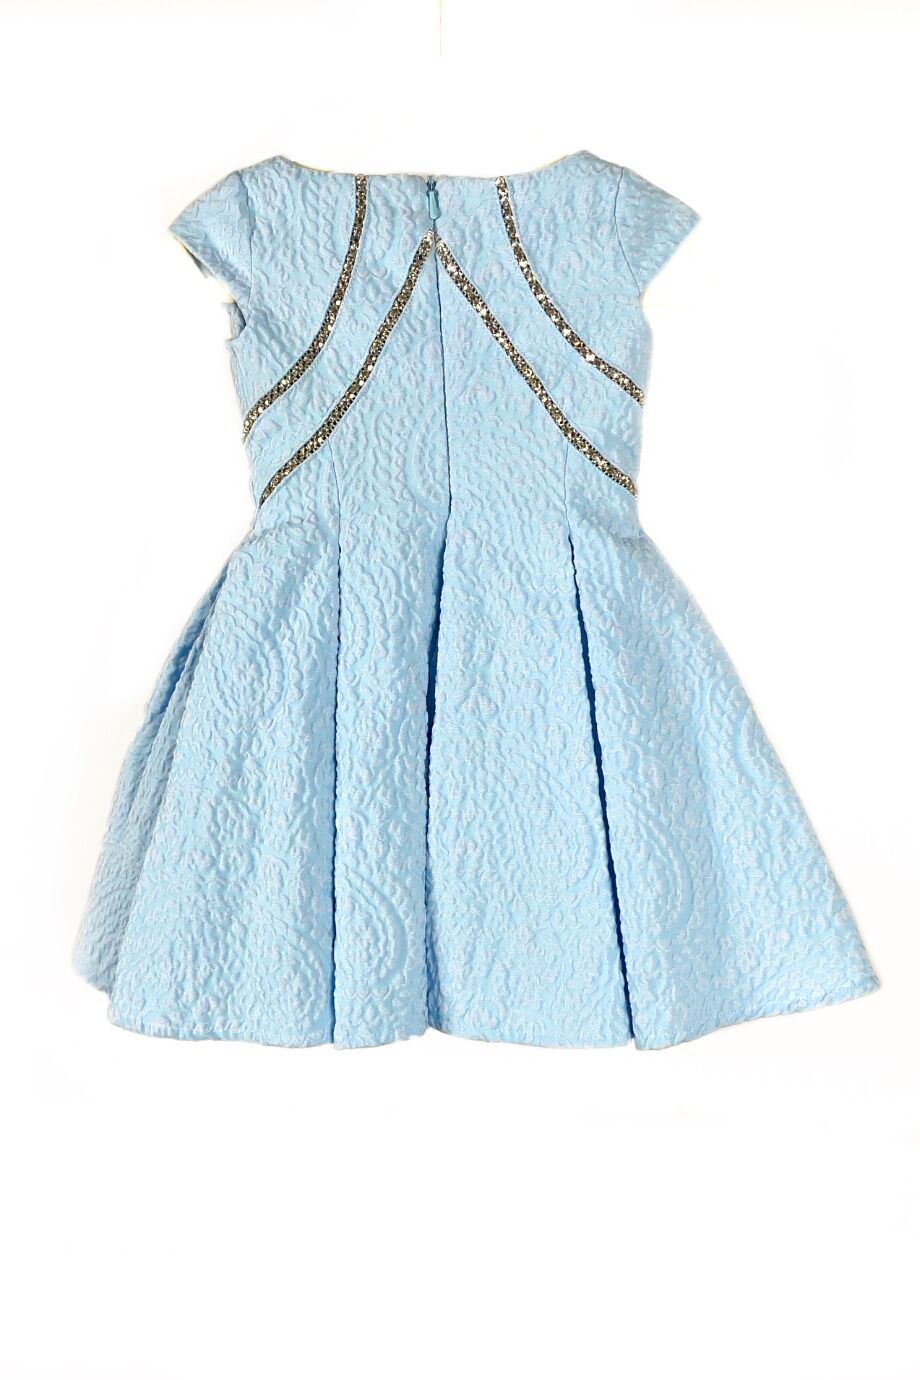 image 3 Деткое платье голубого цвета с сердцем из страз